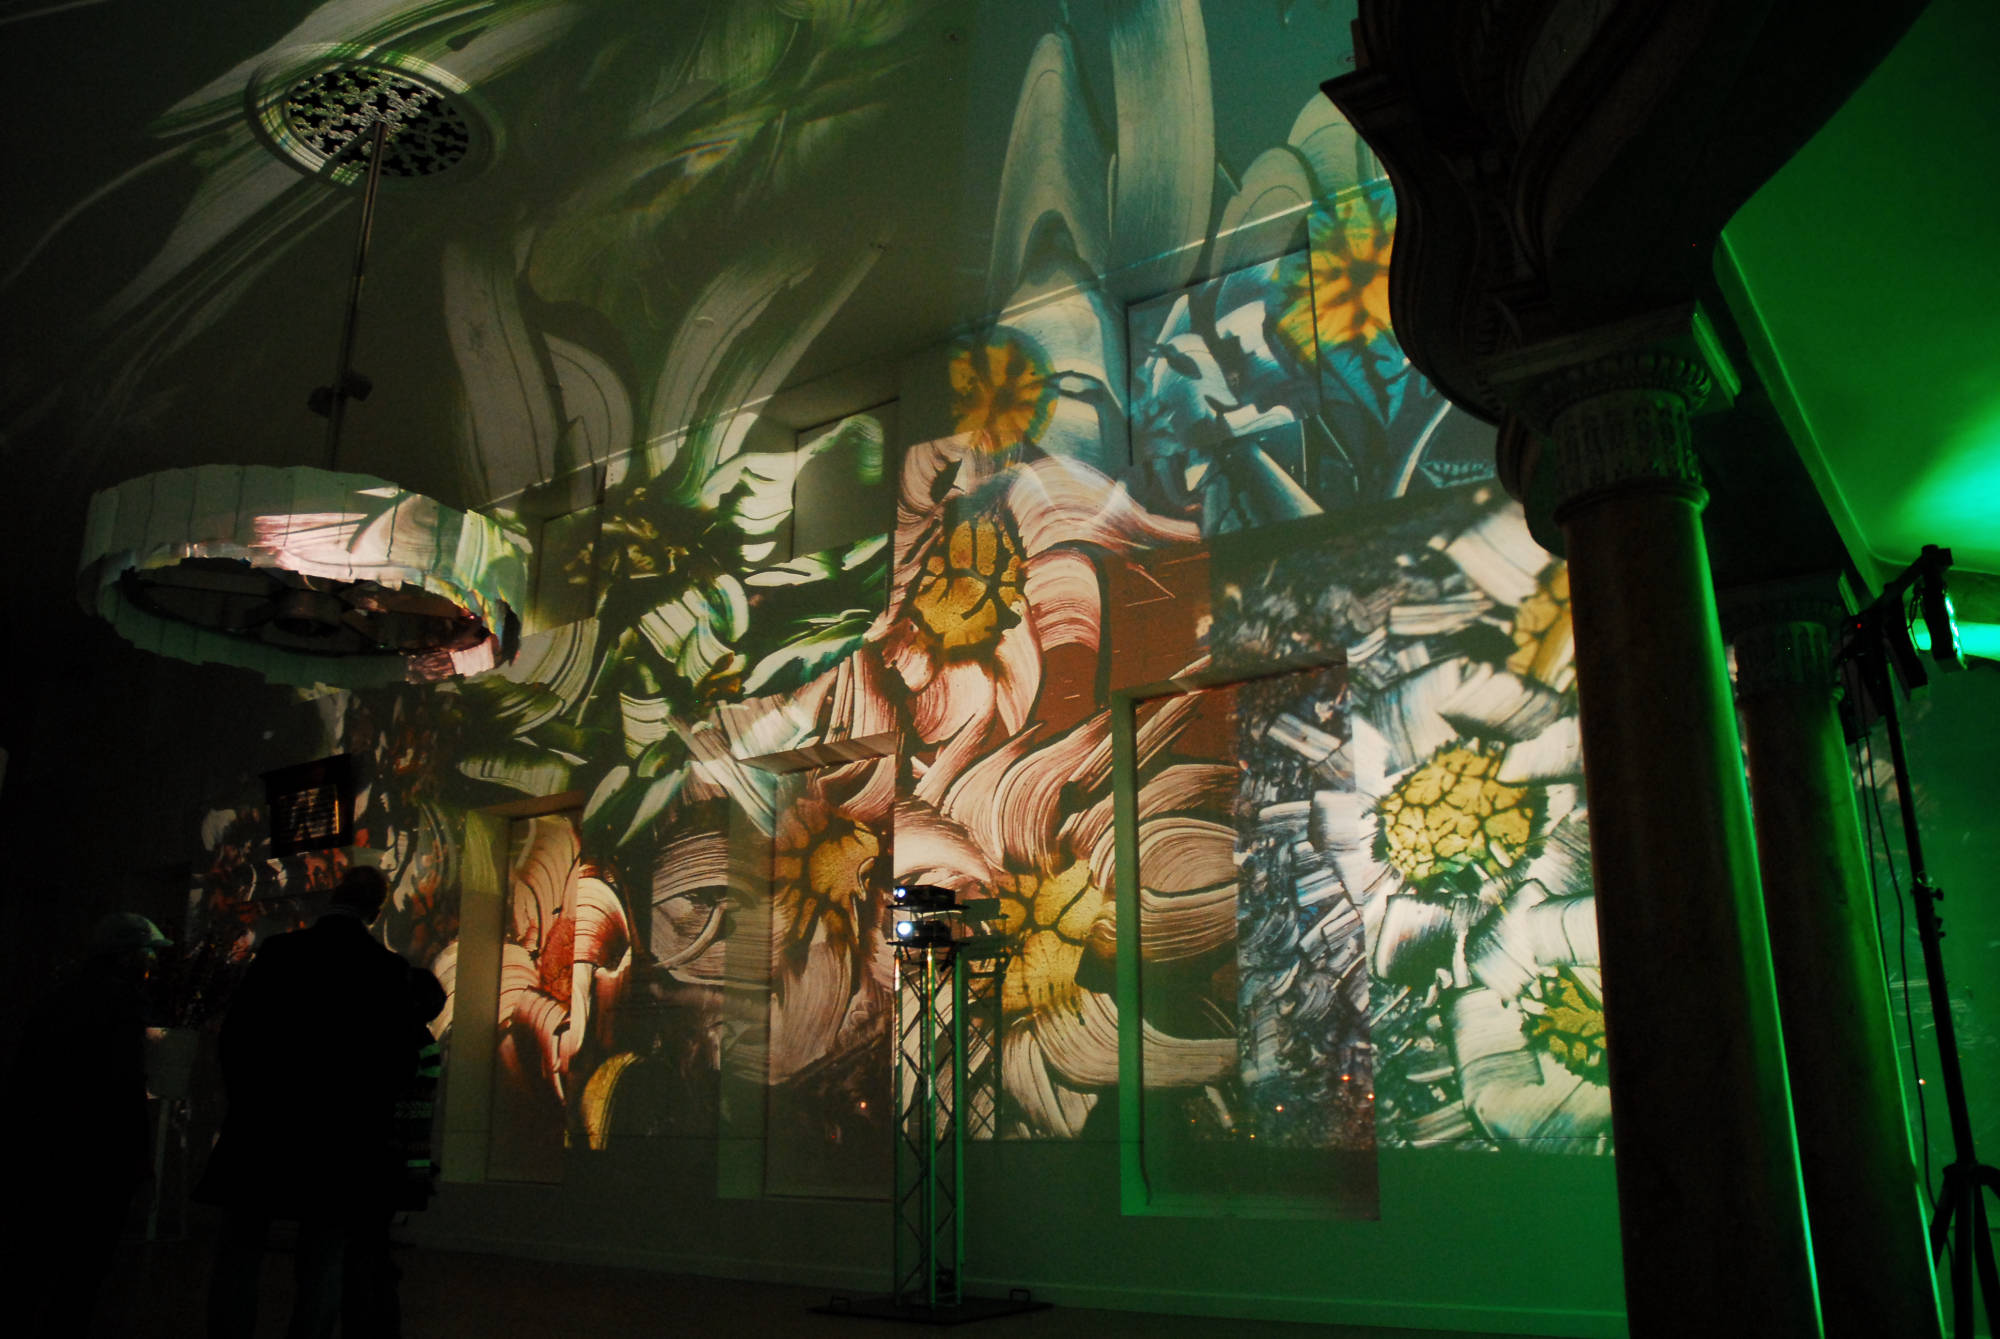 judocus, visuals, hermitage, museum8, 2012, impressionism, projections, Amsterdam, 2012, dia